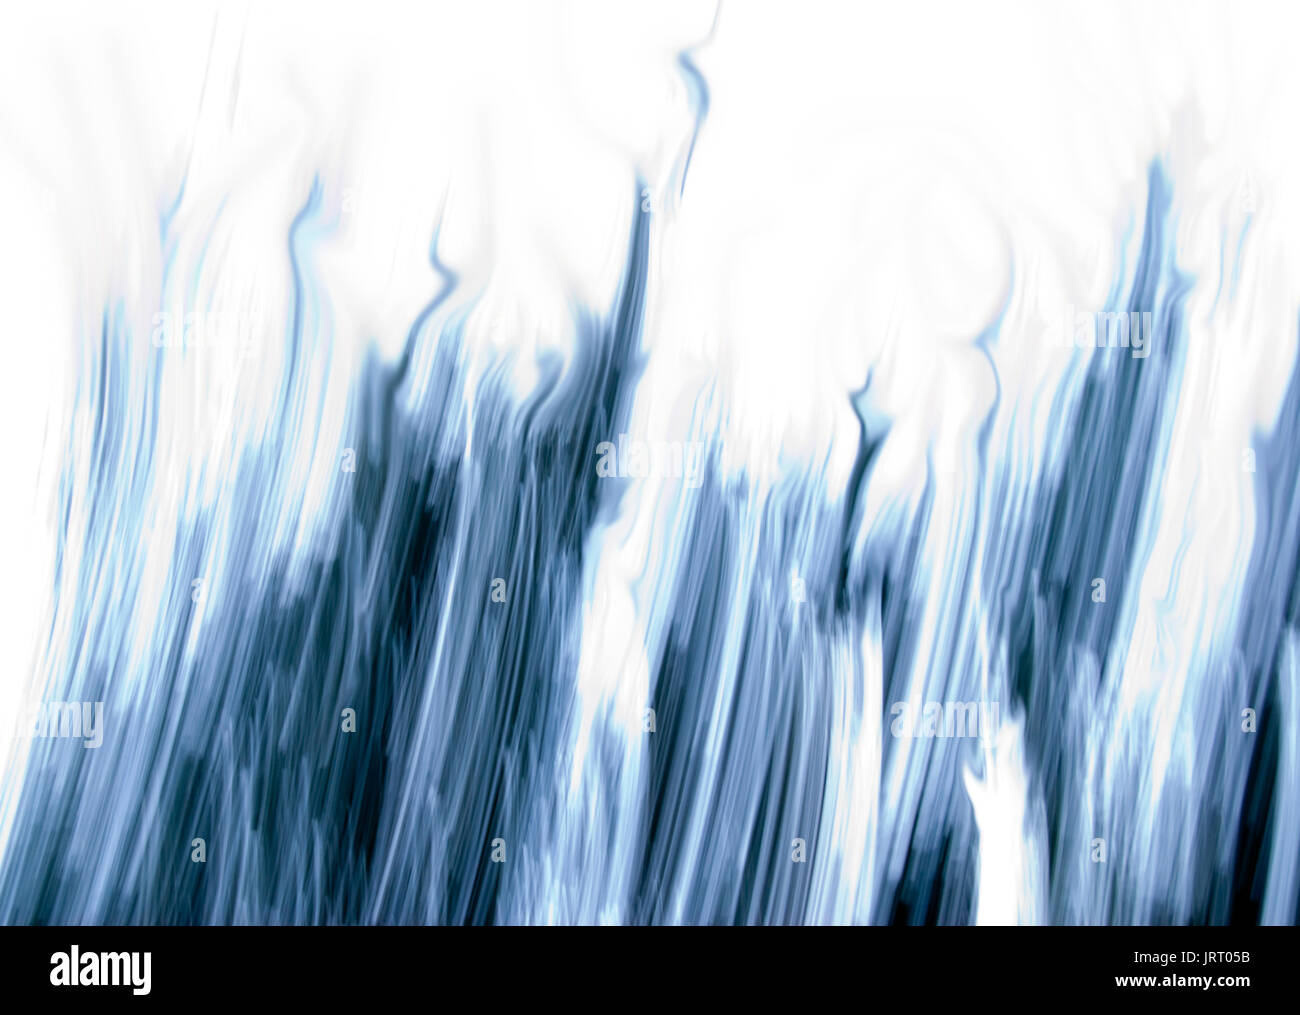 Abstrakter Hintergrund, Blaues Design, Grafisch, Ausdrucksstark, Blaue Flammen, Blaue Streifen, Blaue Linien, Bizarr, Kurve, Schläge, Blinkt, Leuchtet Auf, Streifen Stockfoto